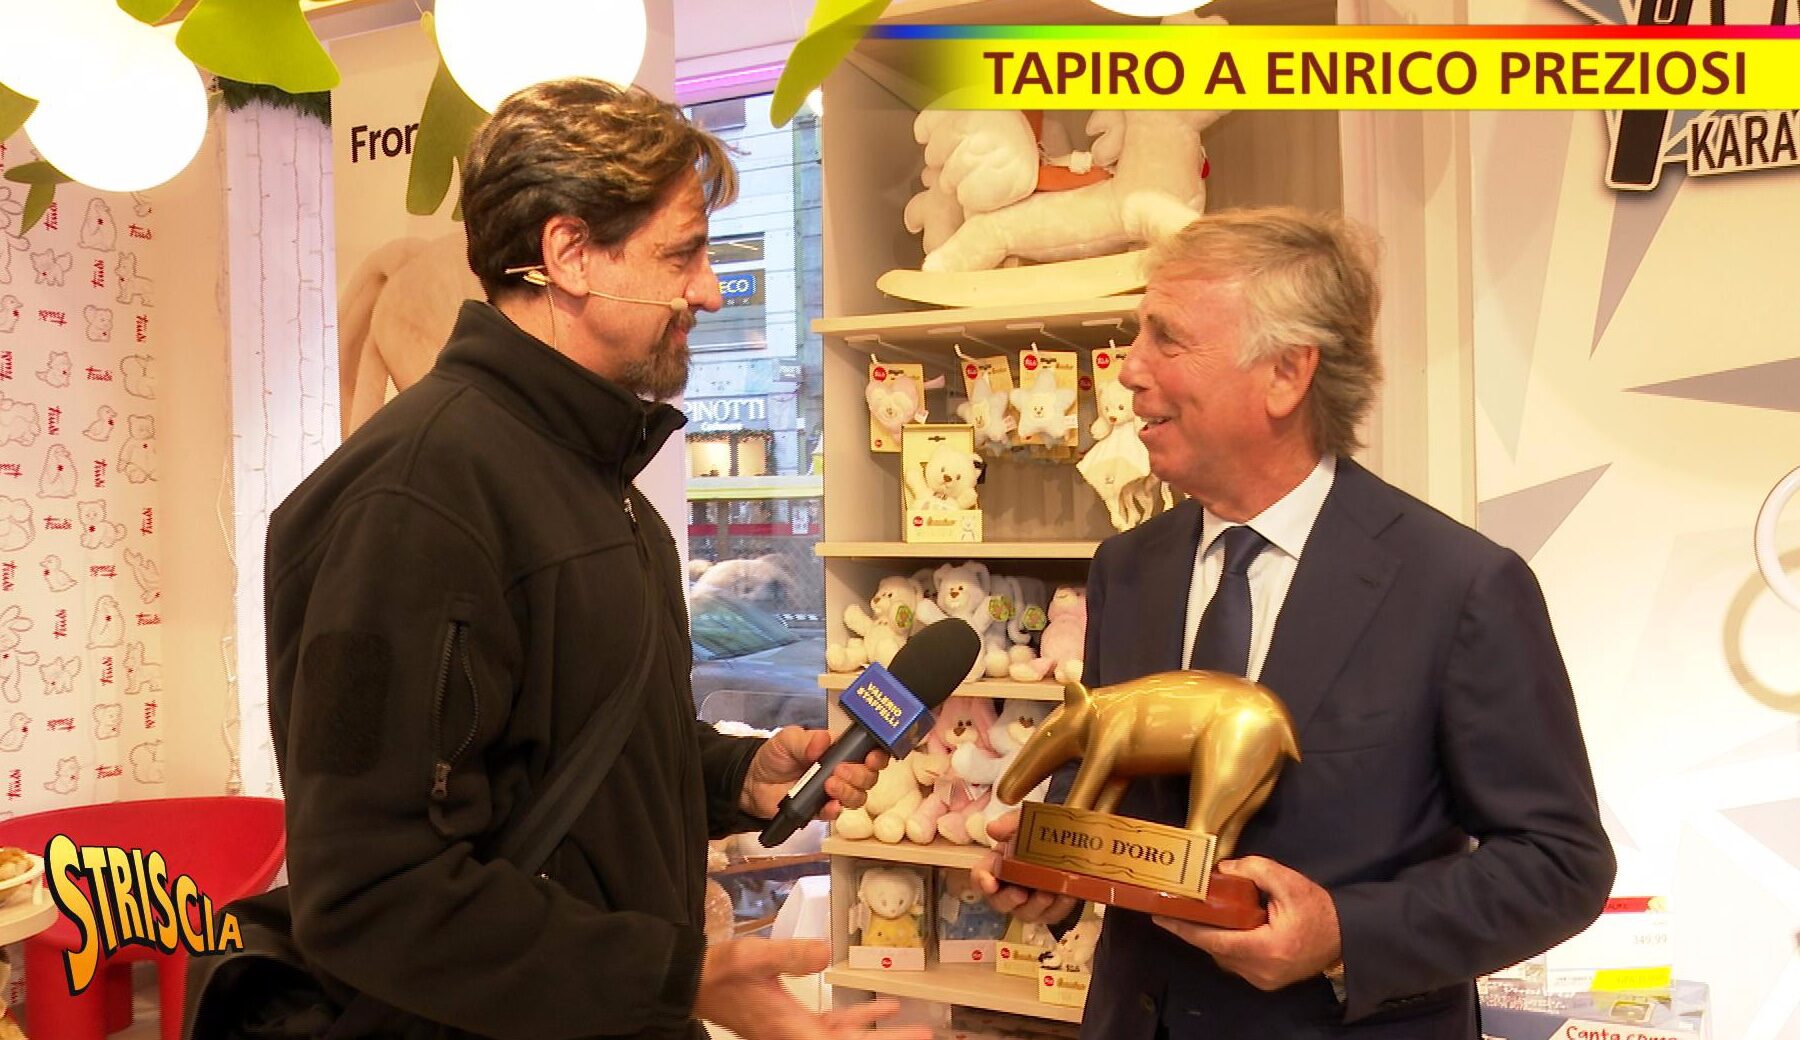 Tapiro d’oro all’ex proprietario del Genoa Enrico Preziosi definito « un pregiudicato » dal Presidente del Coni Malagò